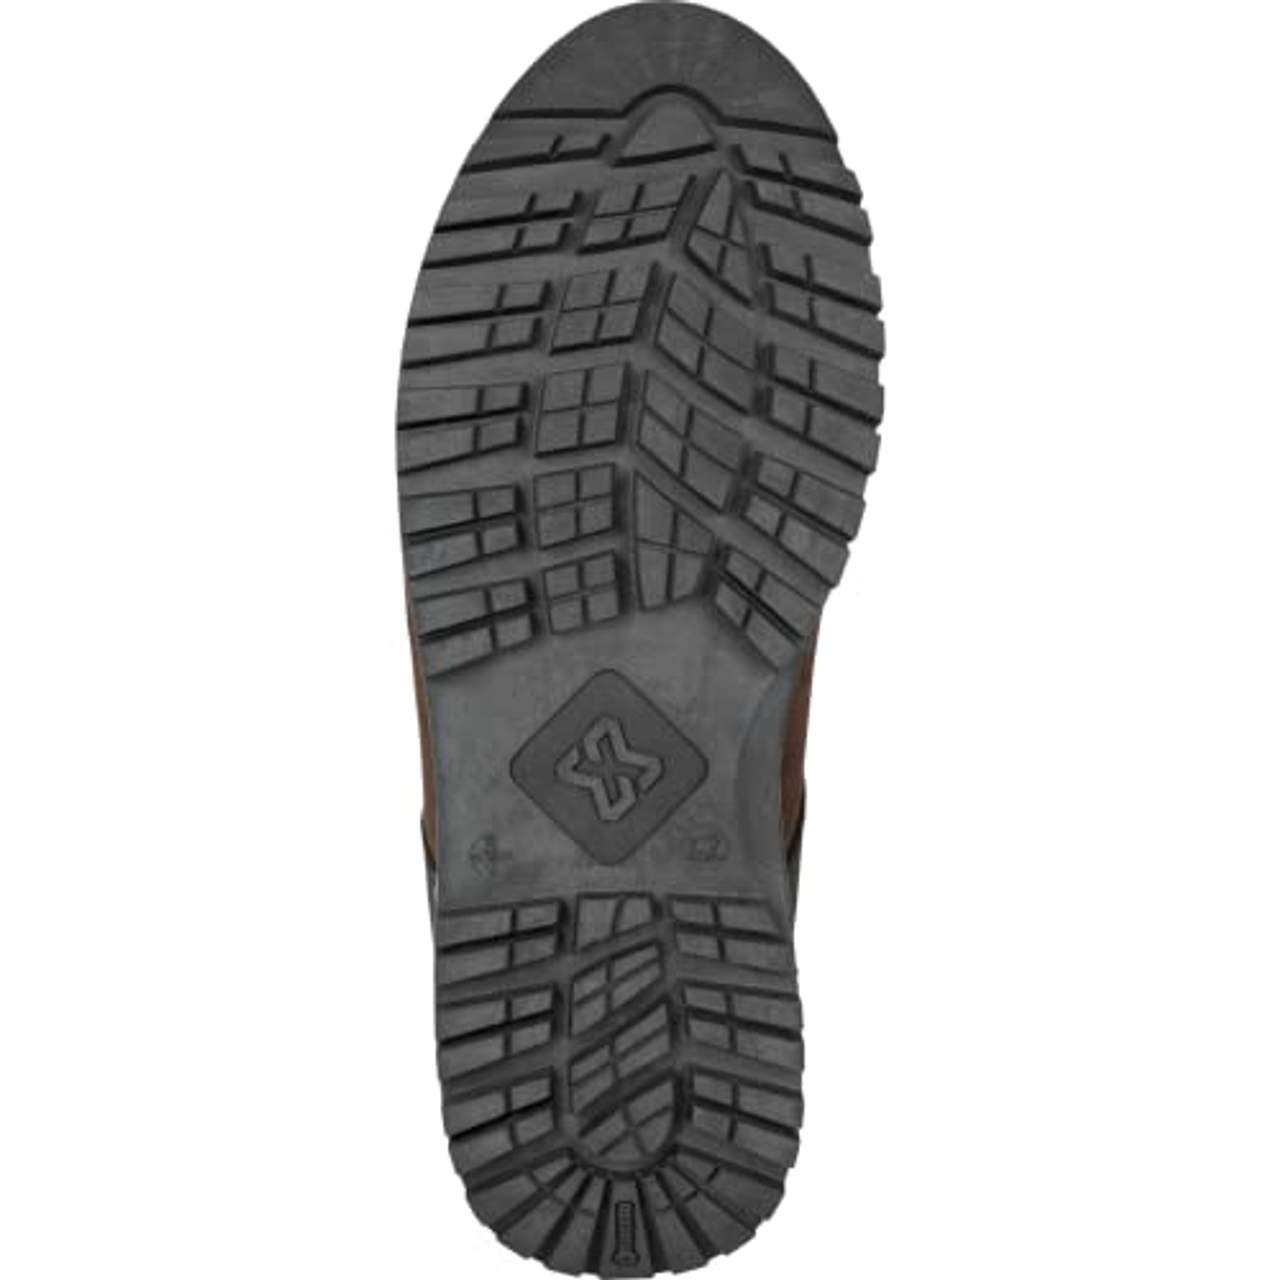 WÜRTH MODYF Sicherheitsstiefel S3 ESD SRC Nature braun: Der zertifizierte Schuh